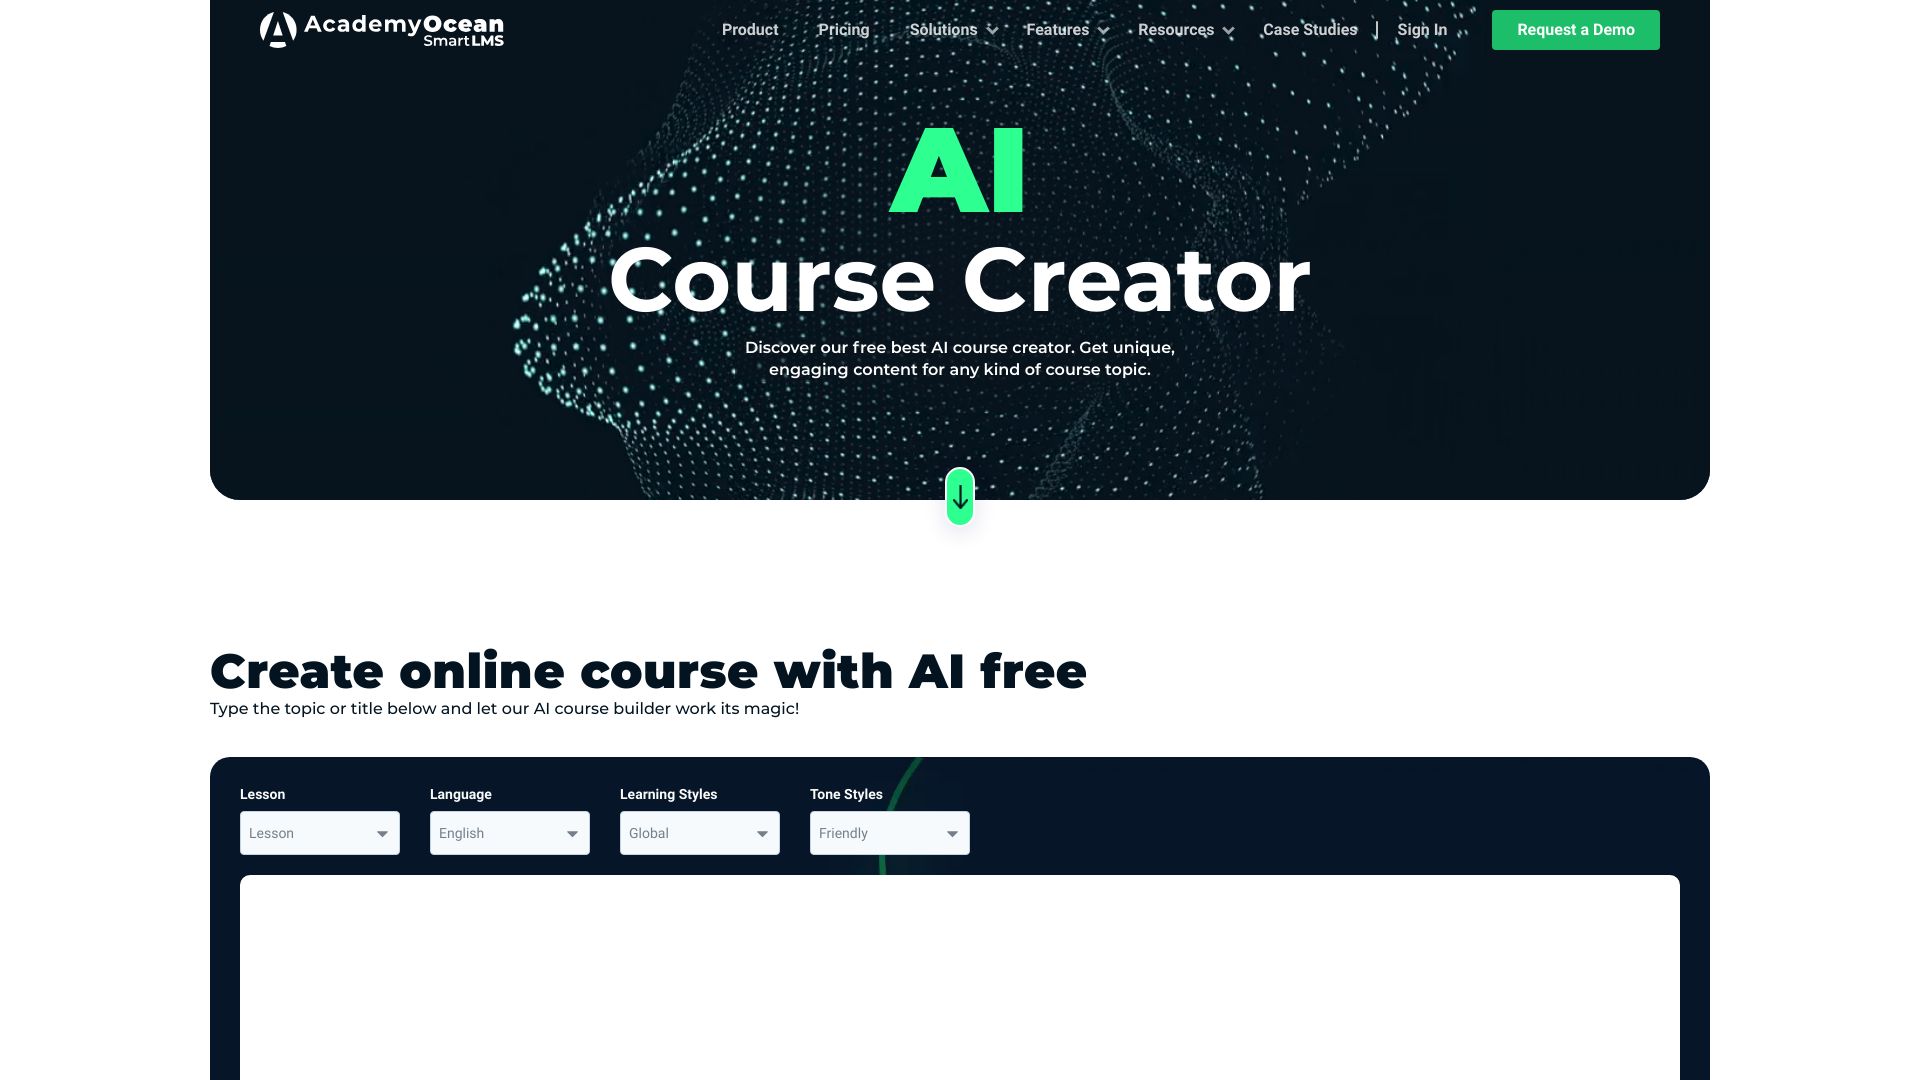 AI Course Creator - AcademyOcean